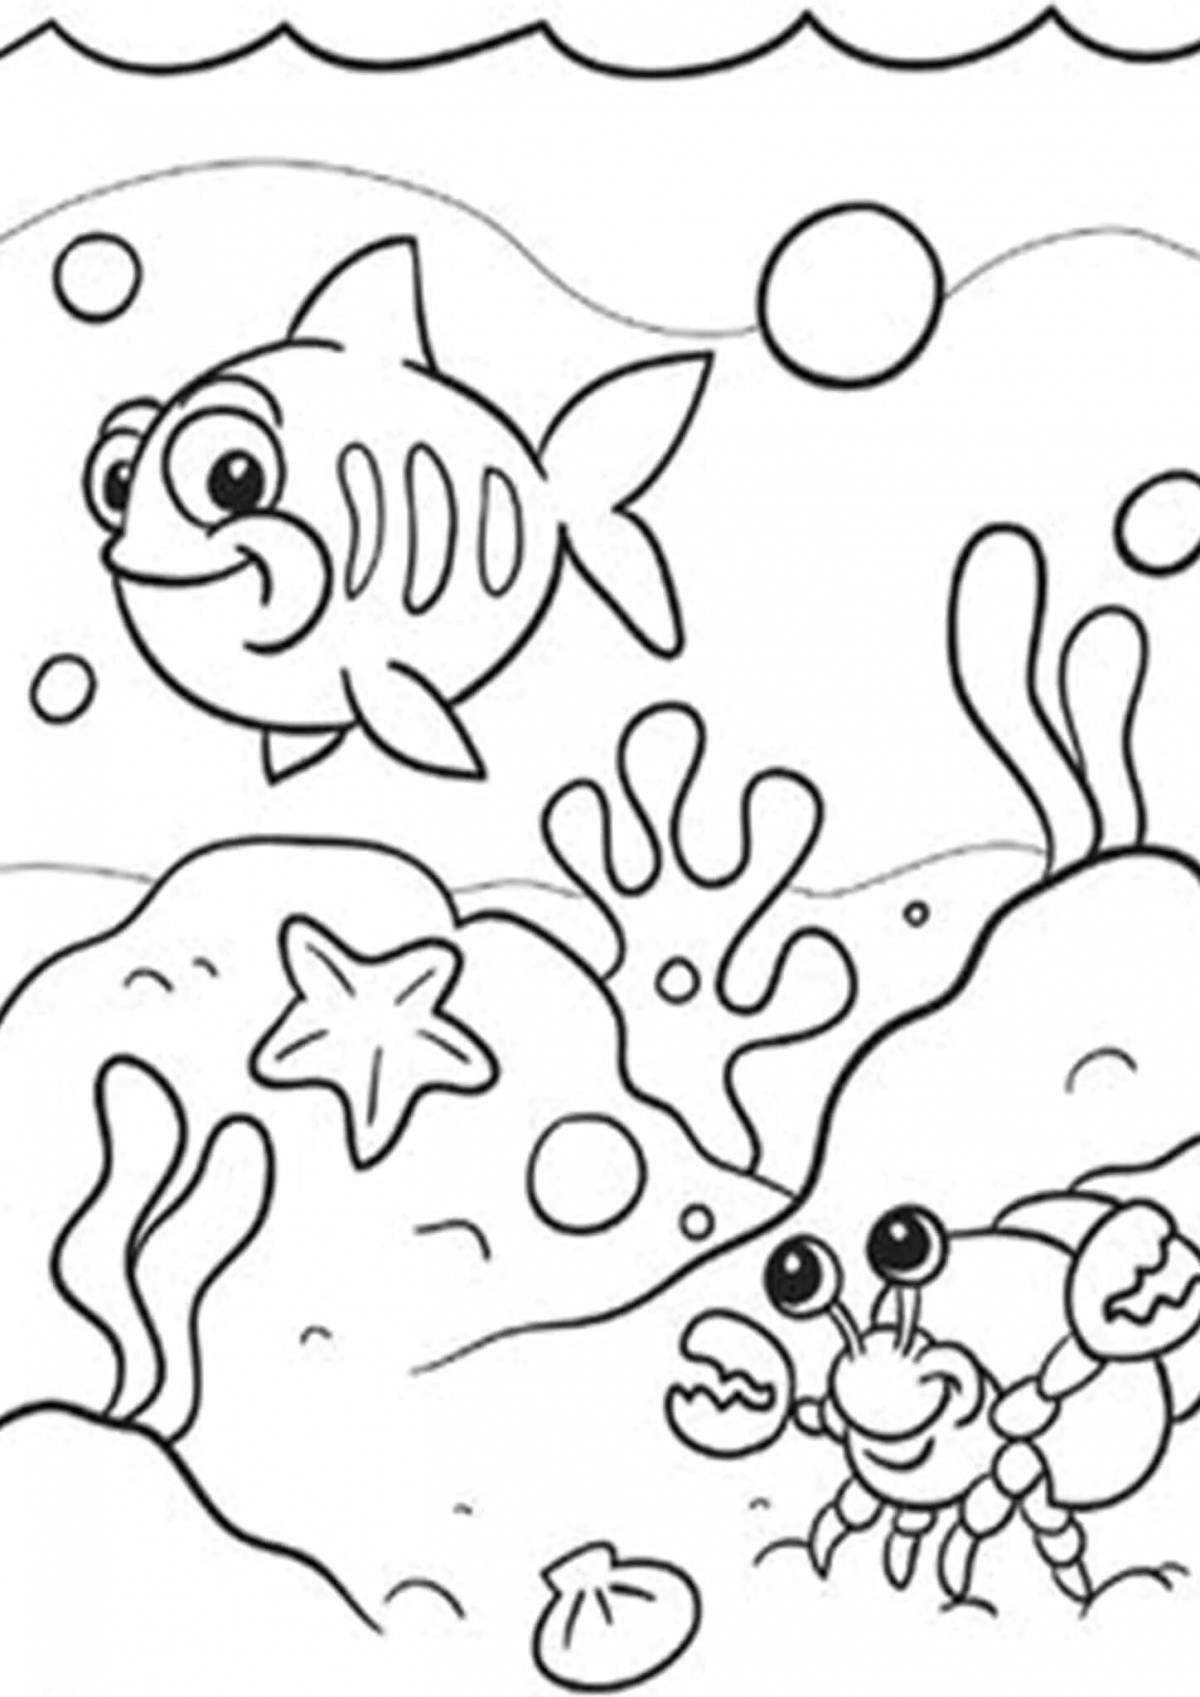 Радостная раскраска морского дна для детей